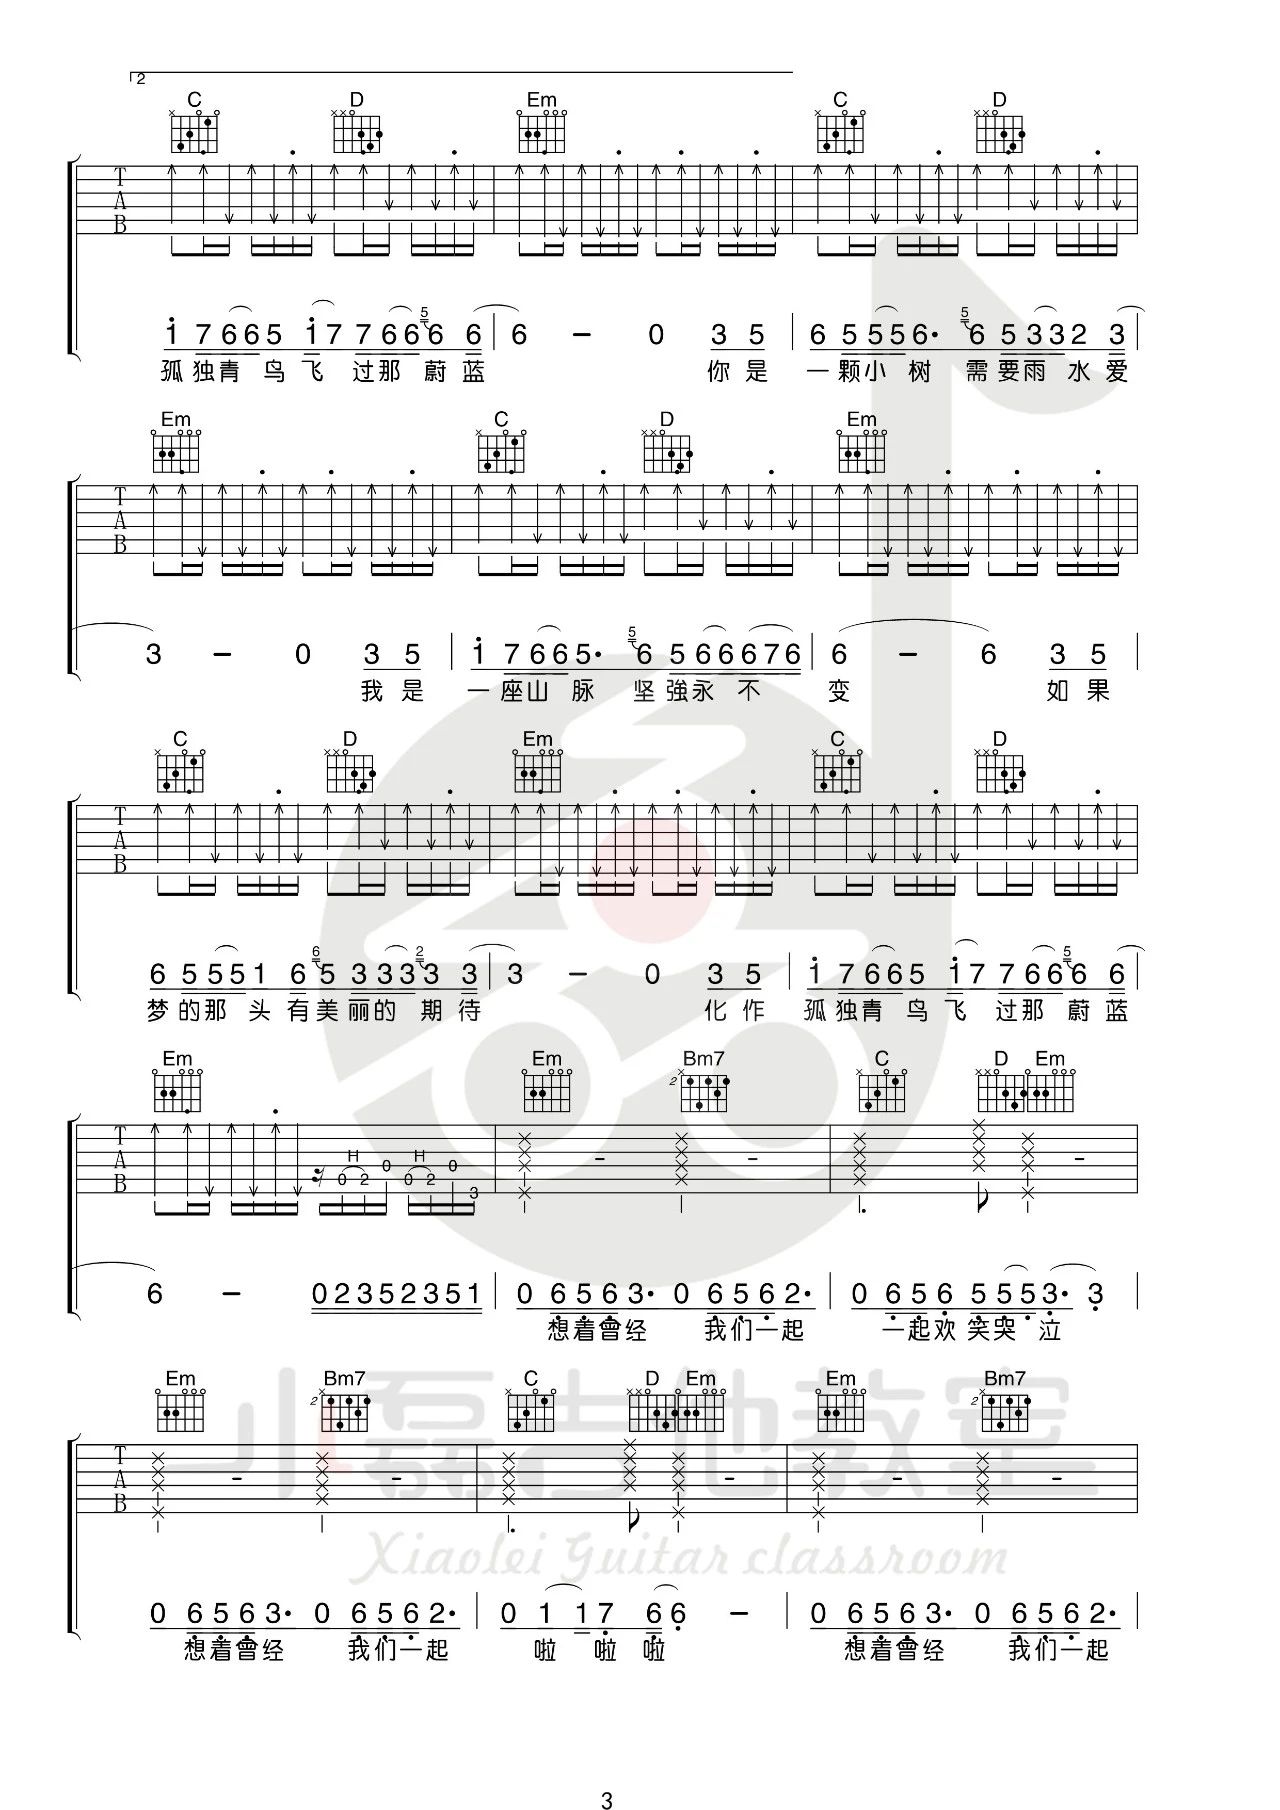 指南针乐队《爱着谁》吉他谱(G调)-Guitar Music Score-歌谱网